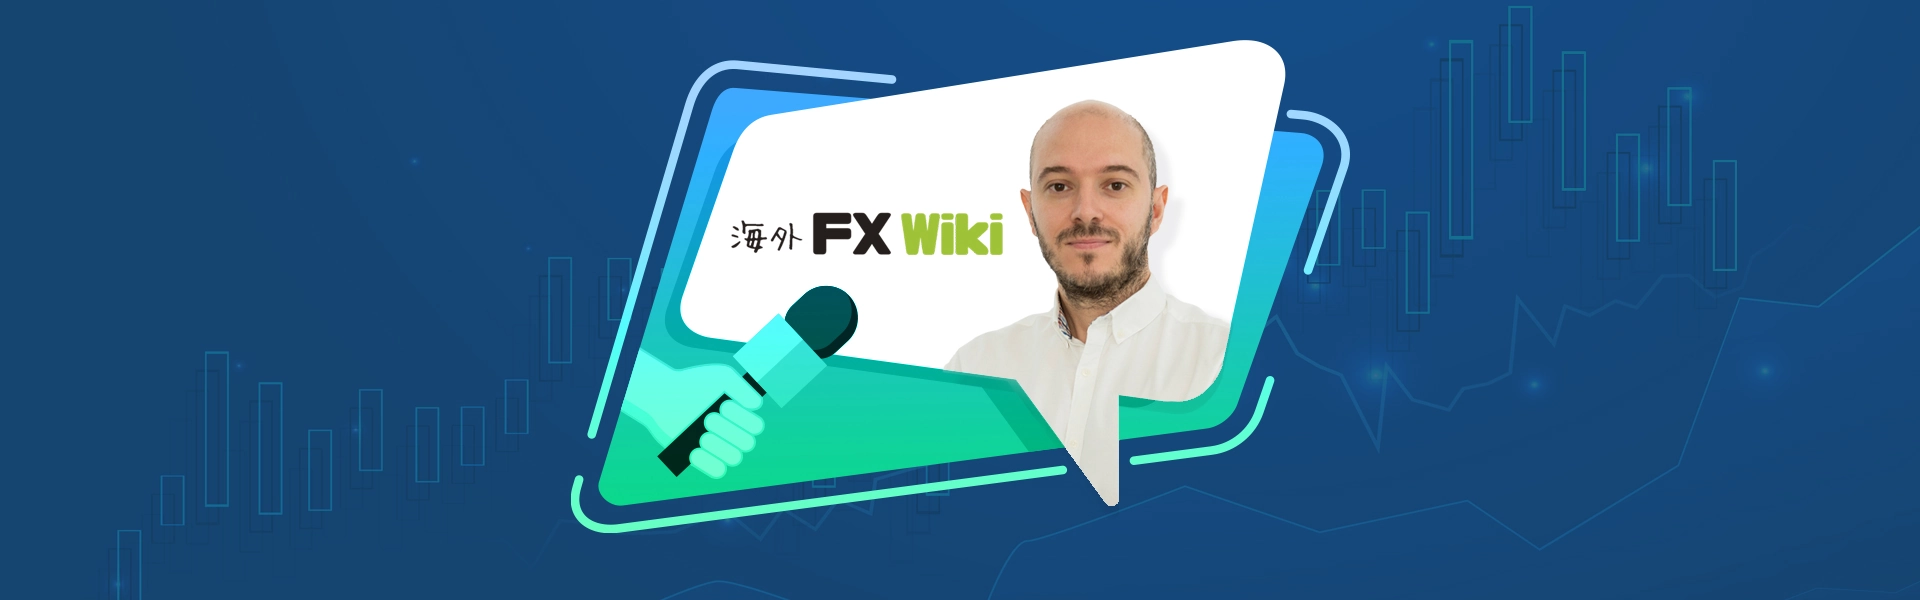 interview wikifx hero banner